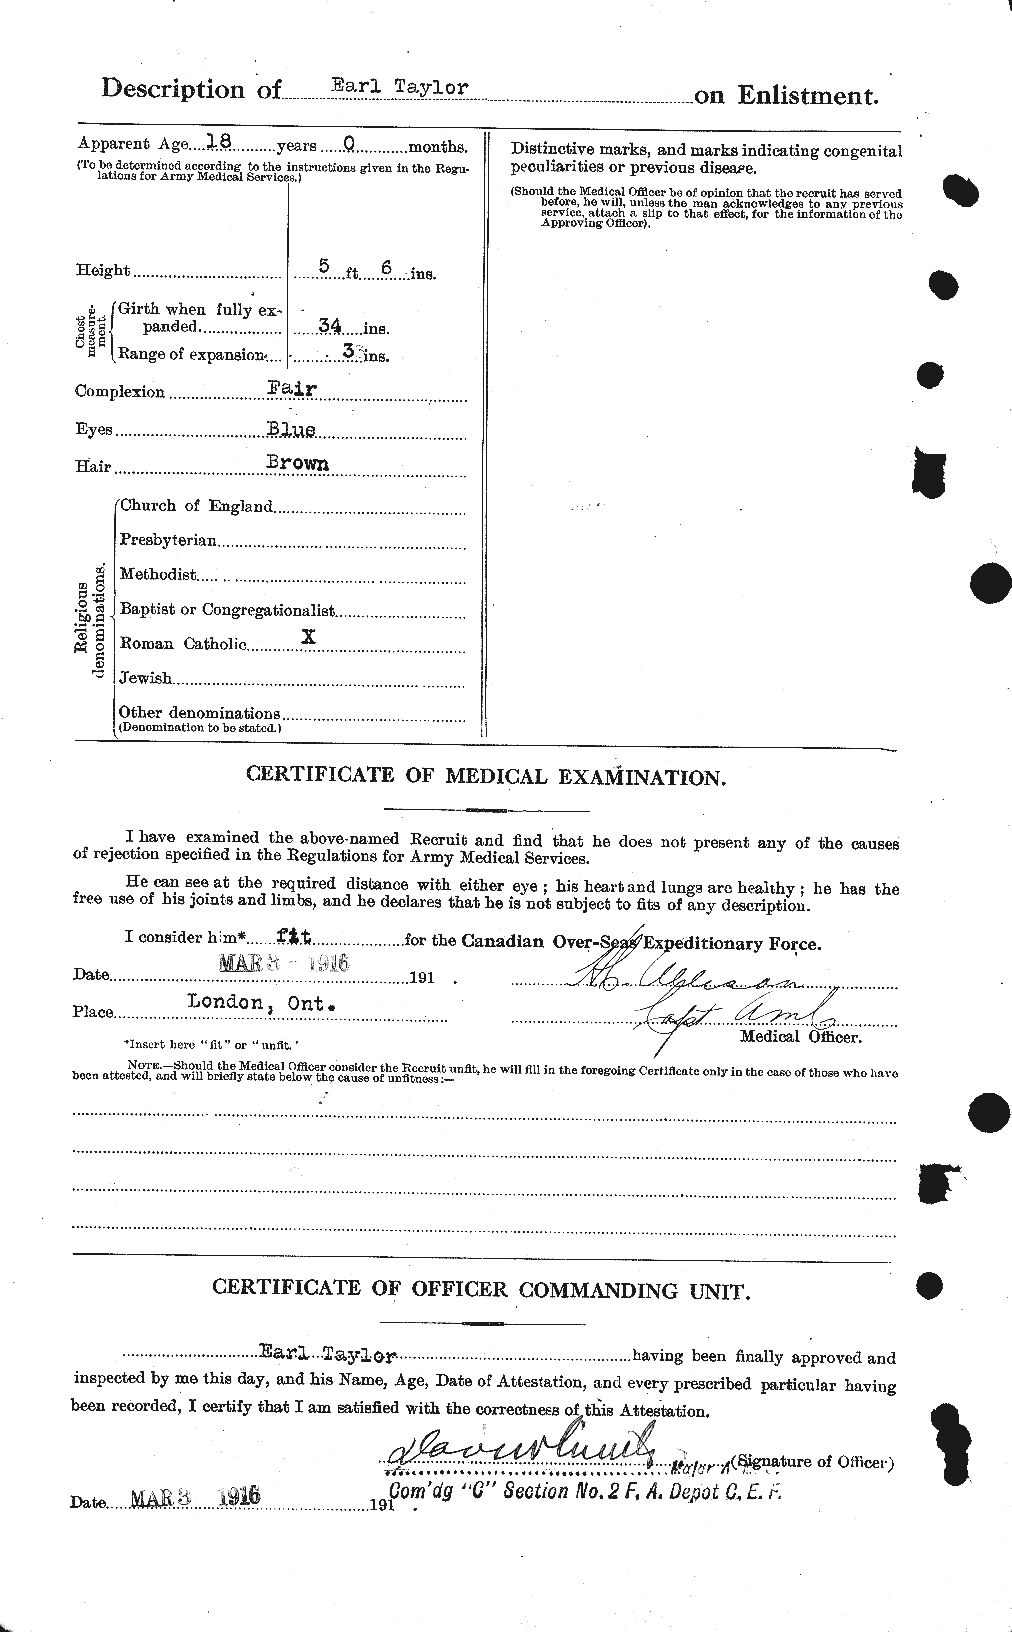 Dossiers du Personnel de la Première Guerre mondiale - CEC 627264b